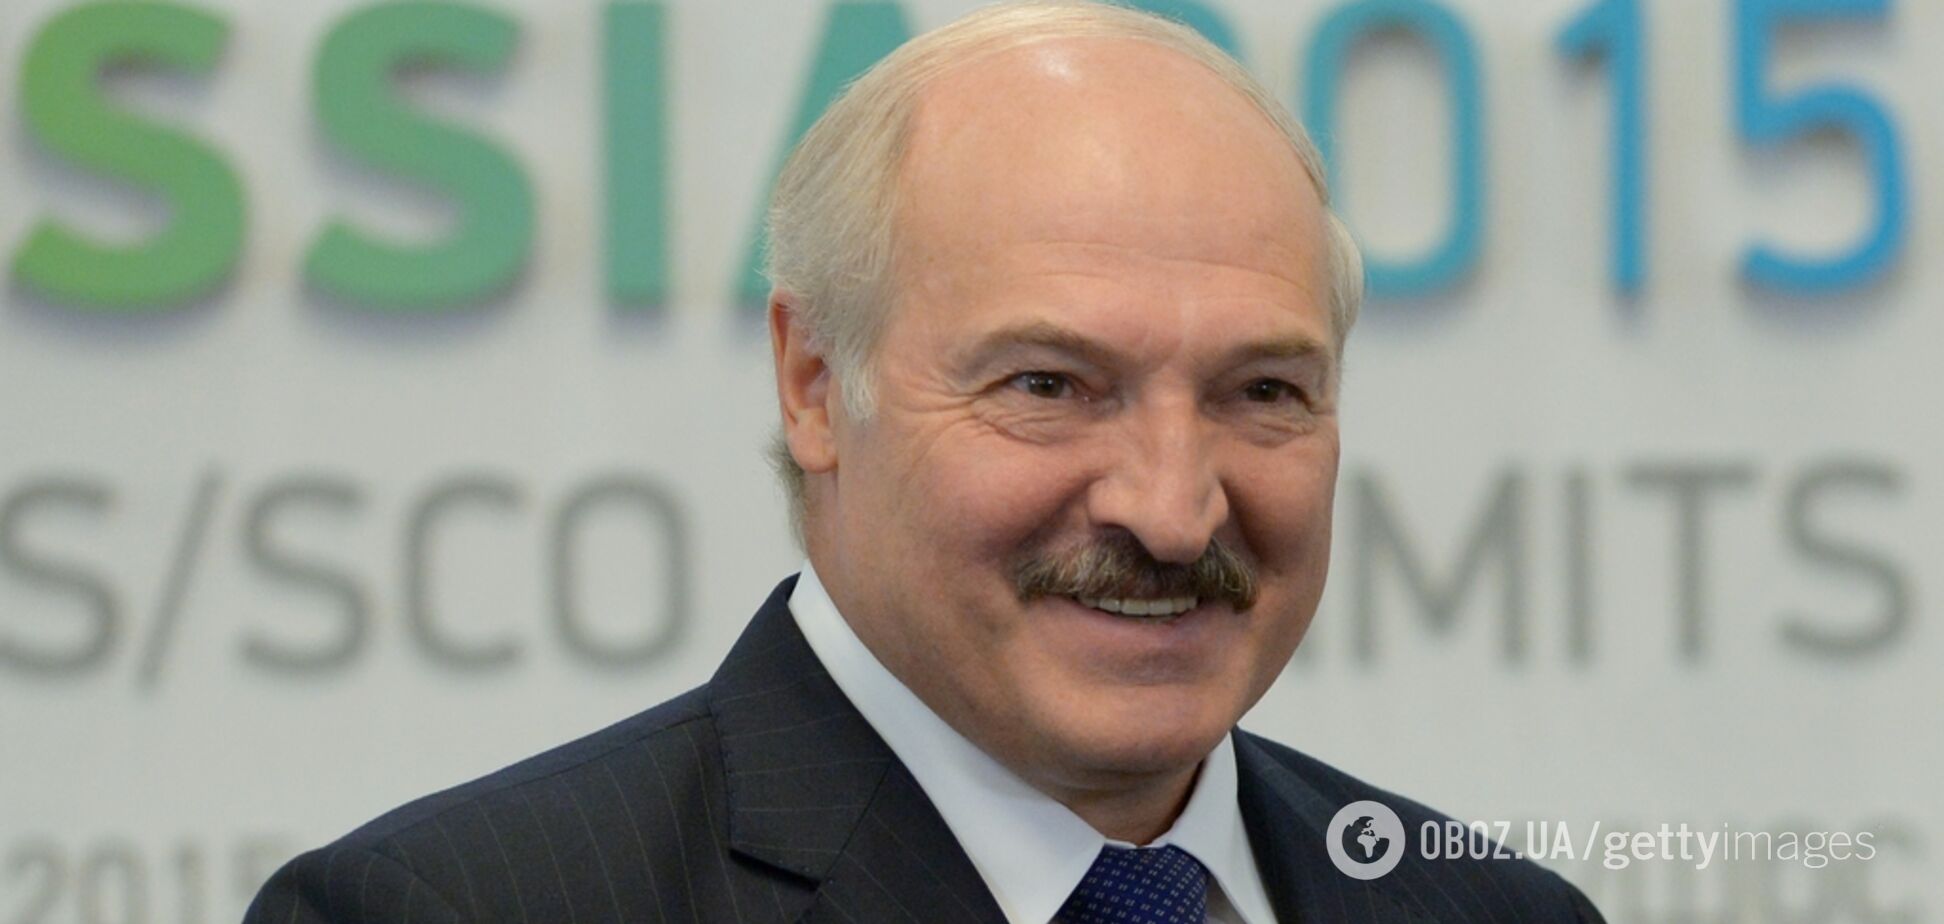 'А то будуть обсмоктувати!' Лукашенко пригрозив 'закрити роти' білорусам